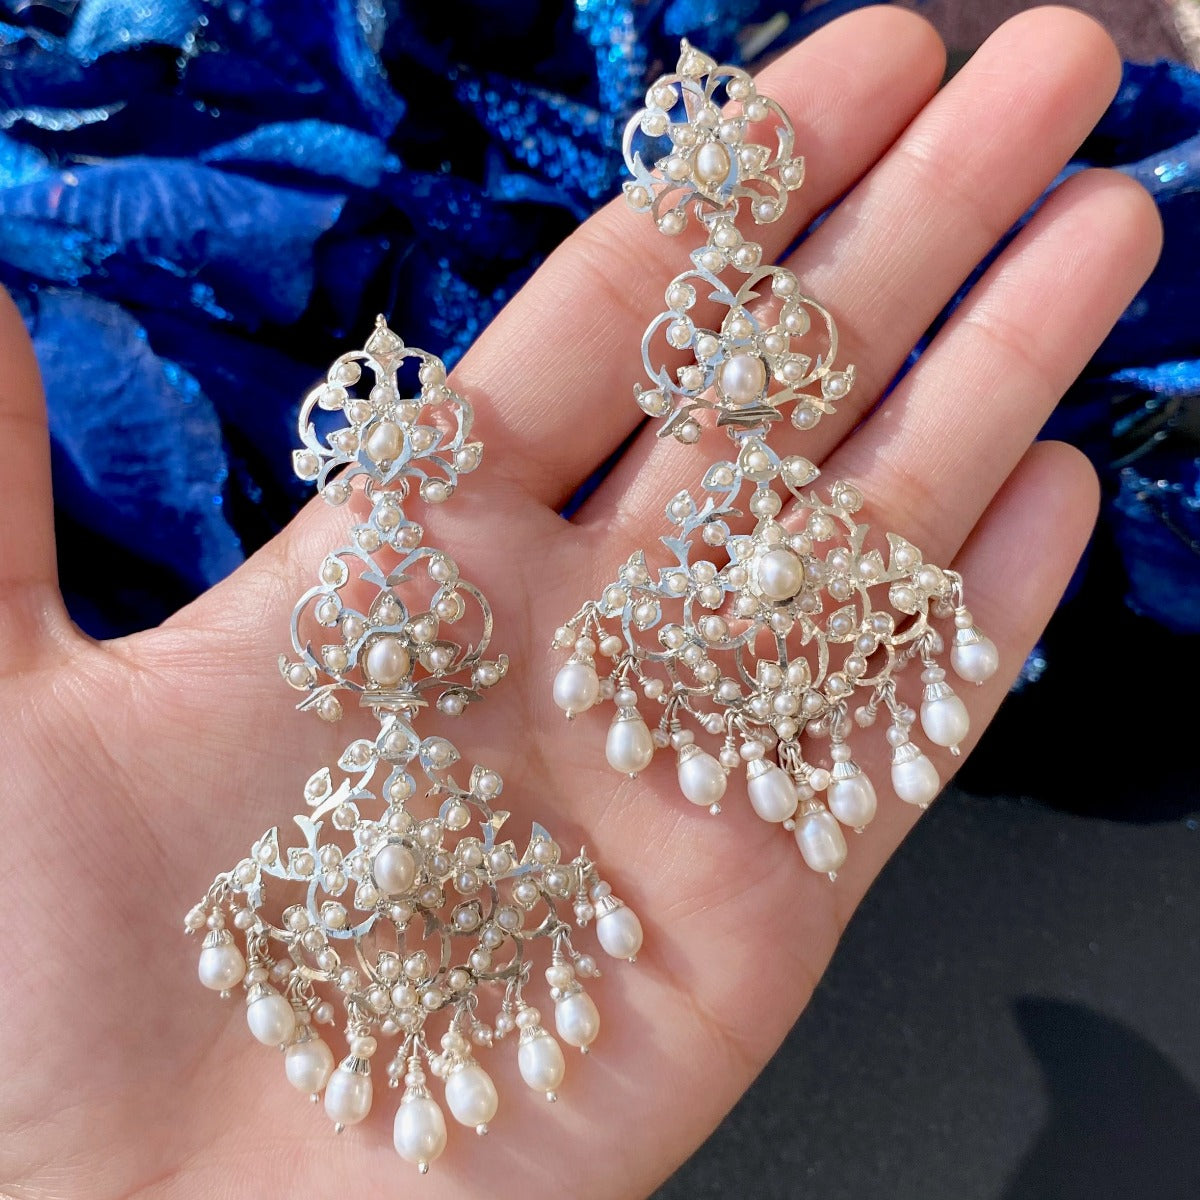 chandelier silver earrings with pearl drops